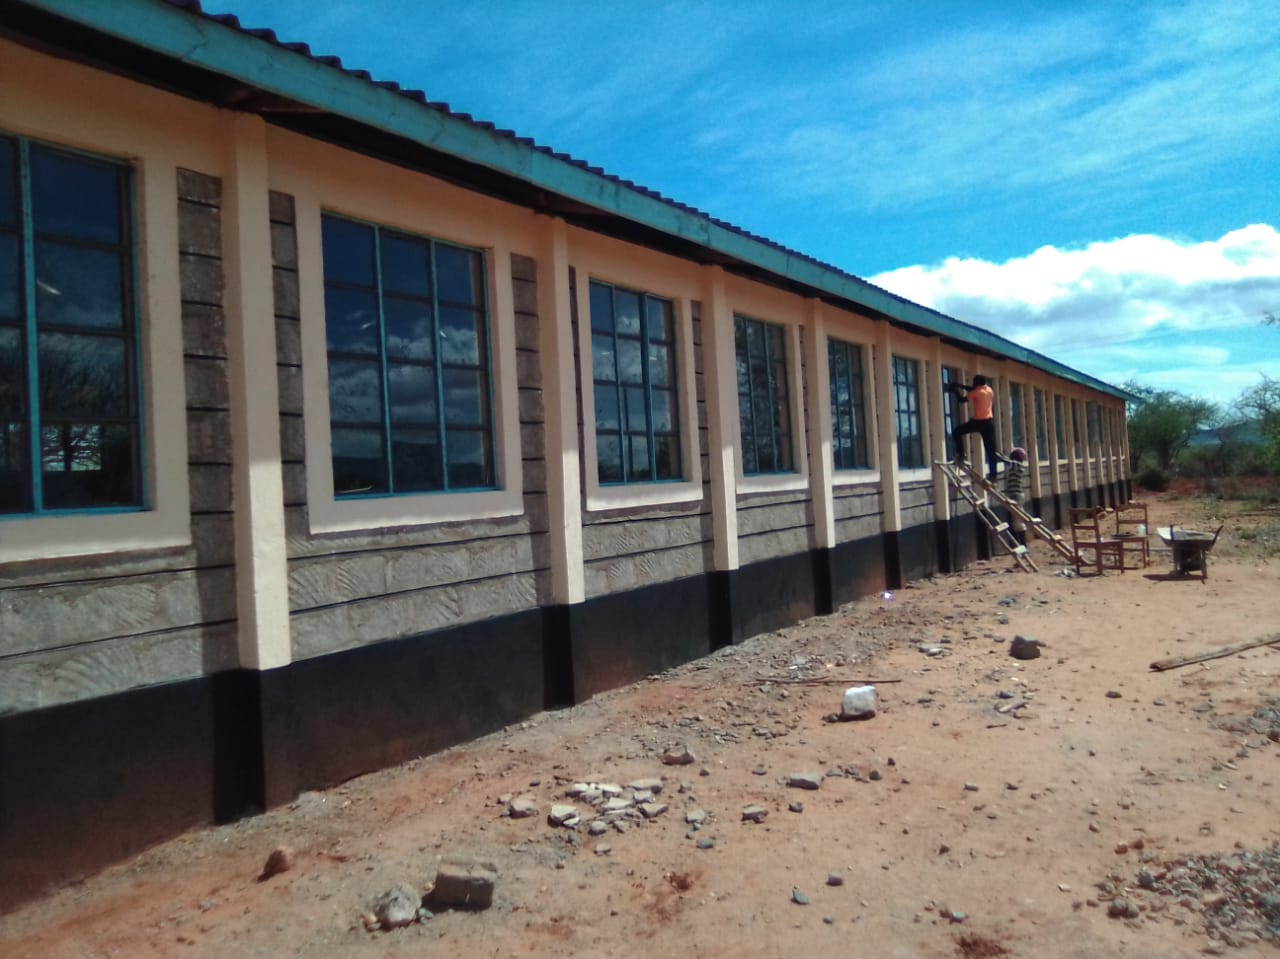 Construction of School facilities